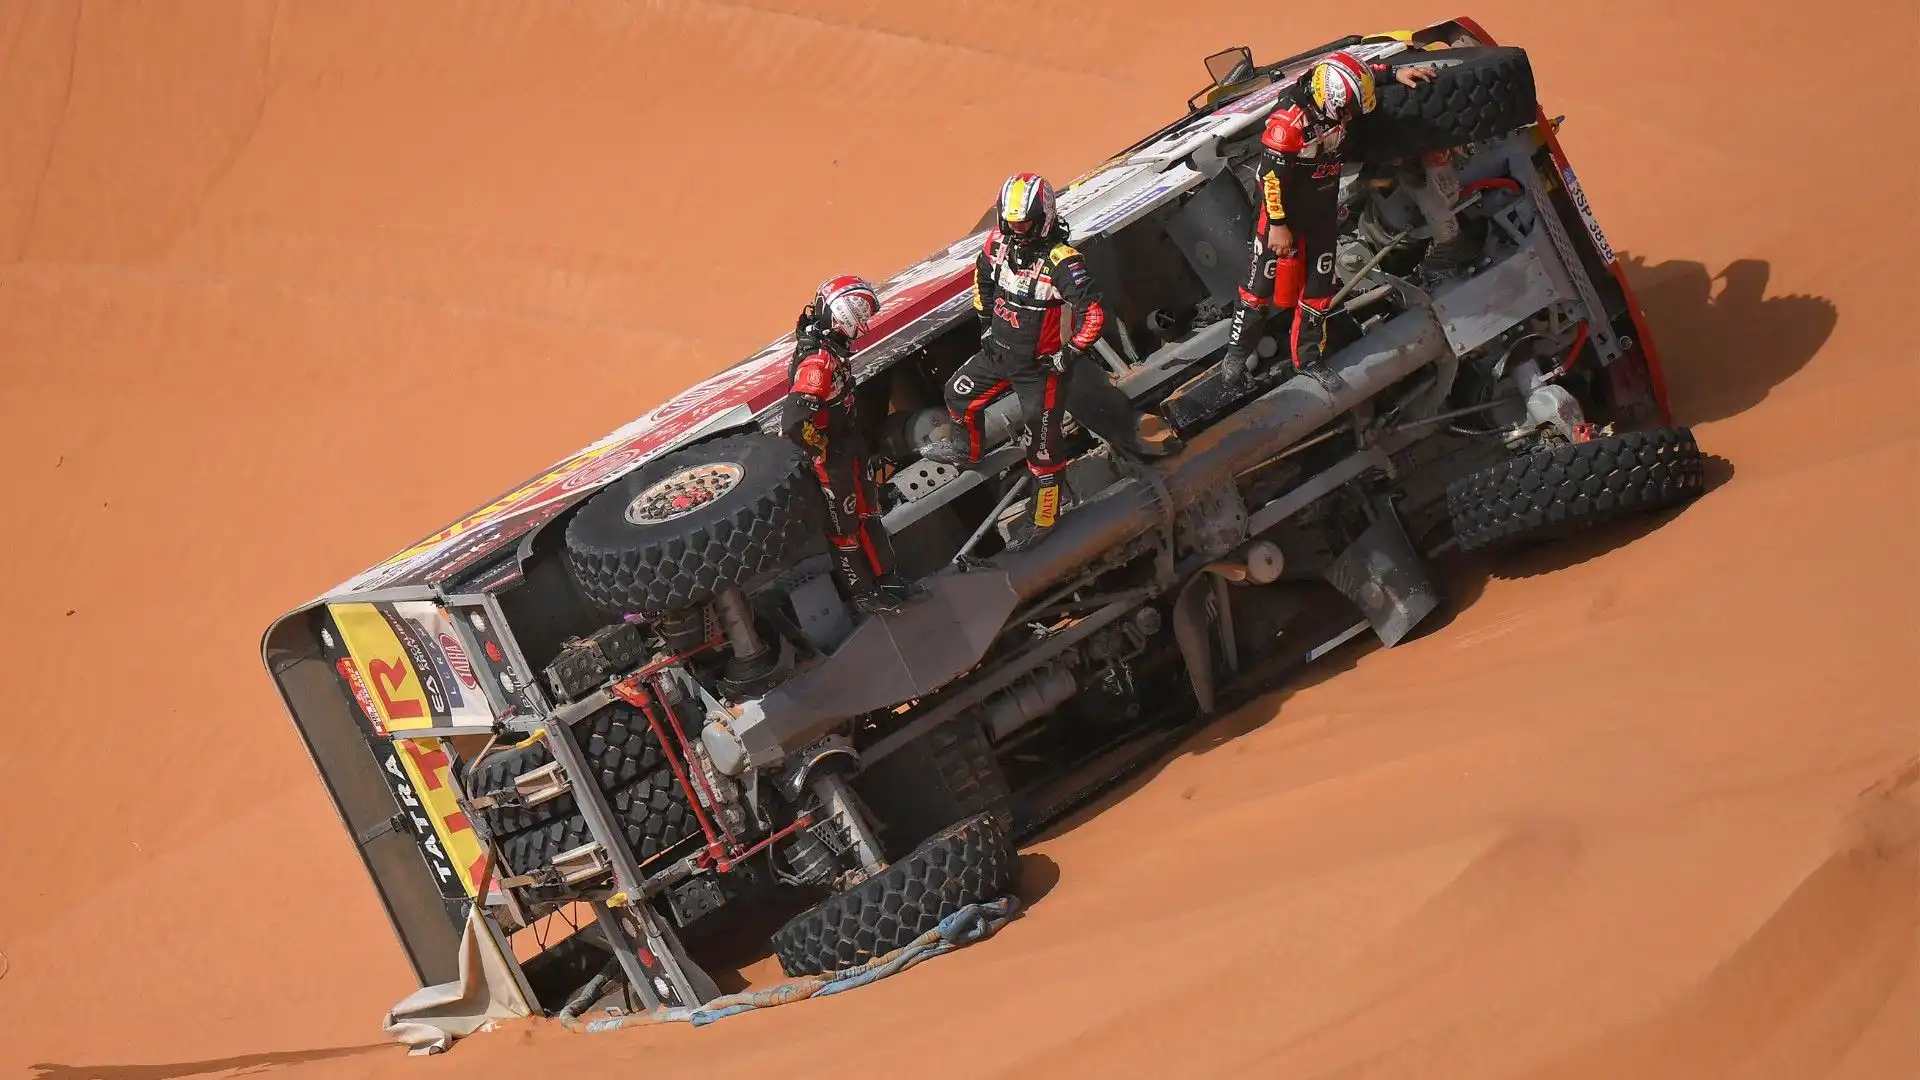 Camion si ribalta nel deserto: le foto